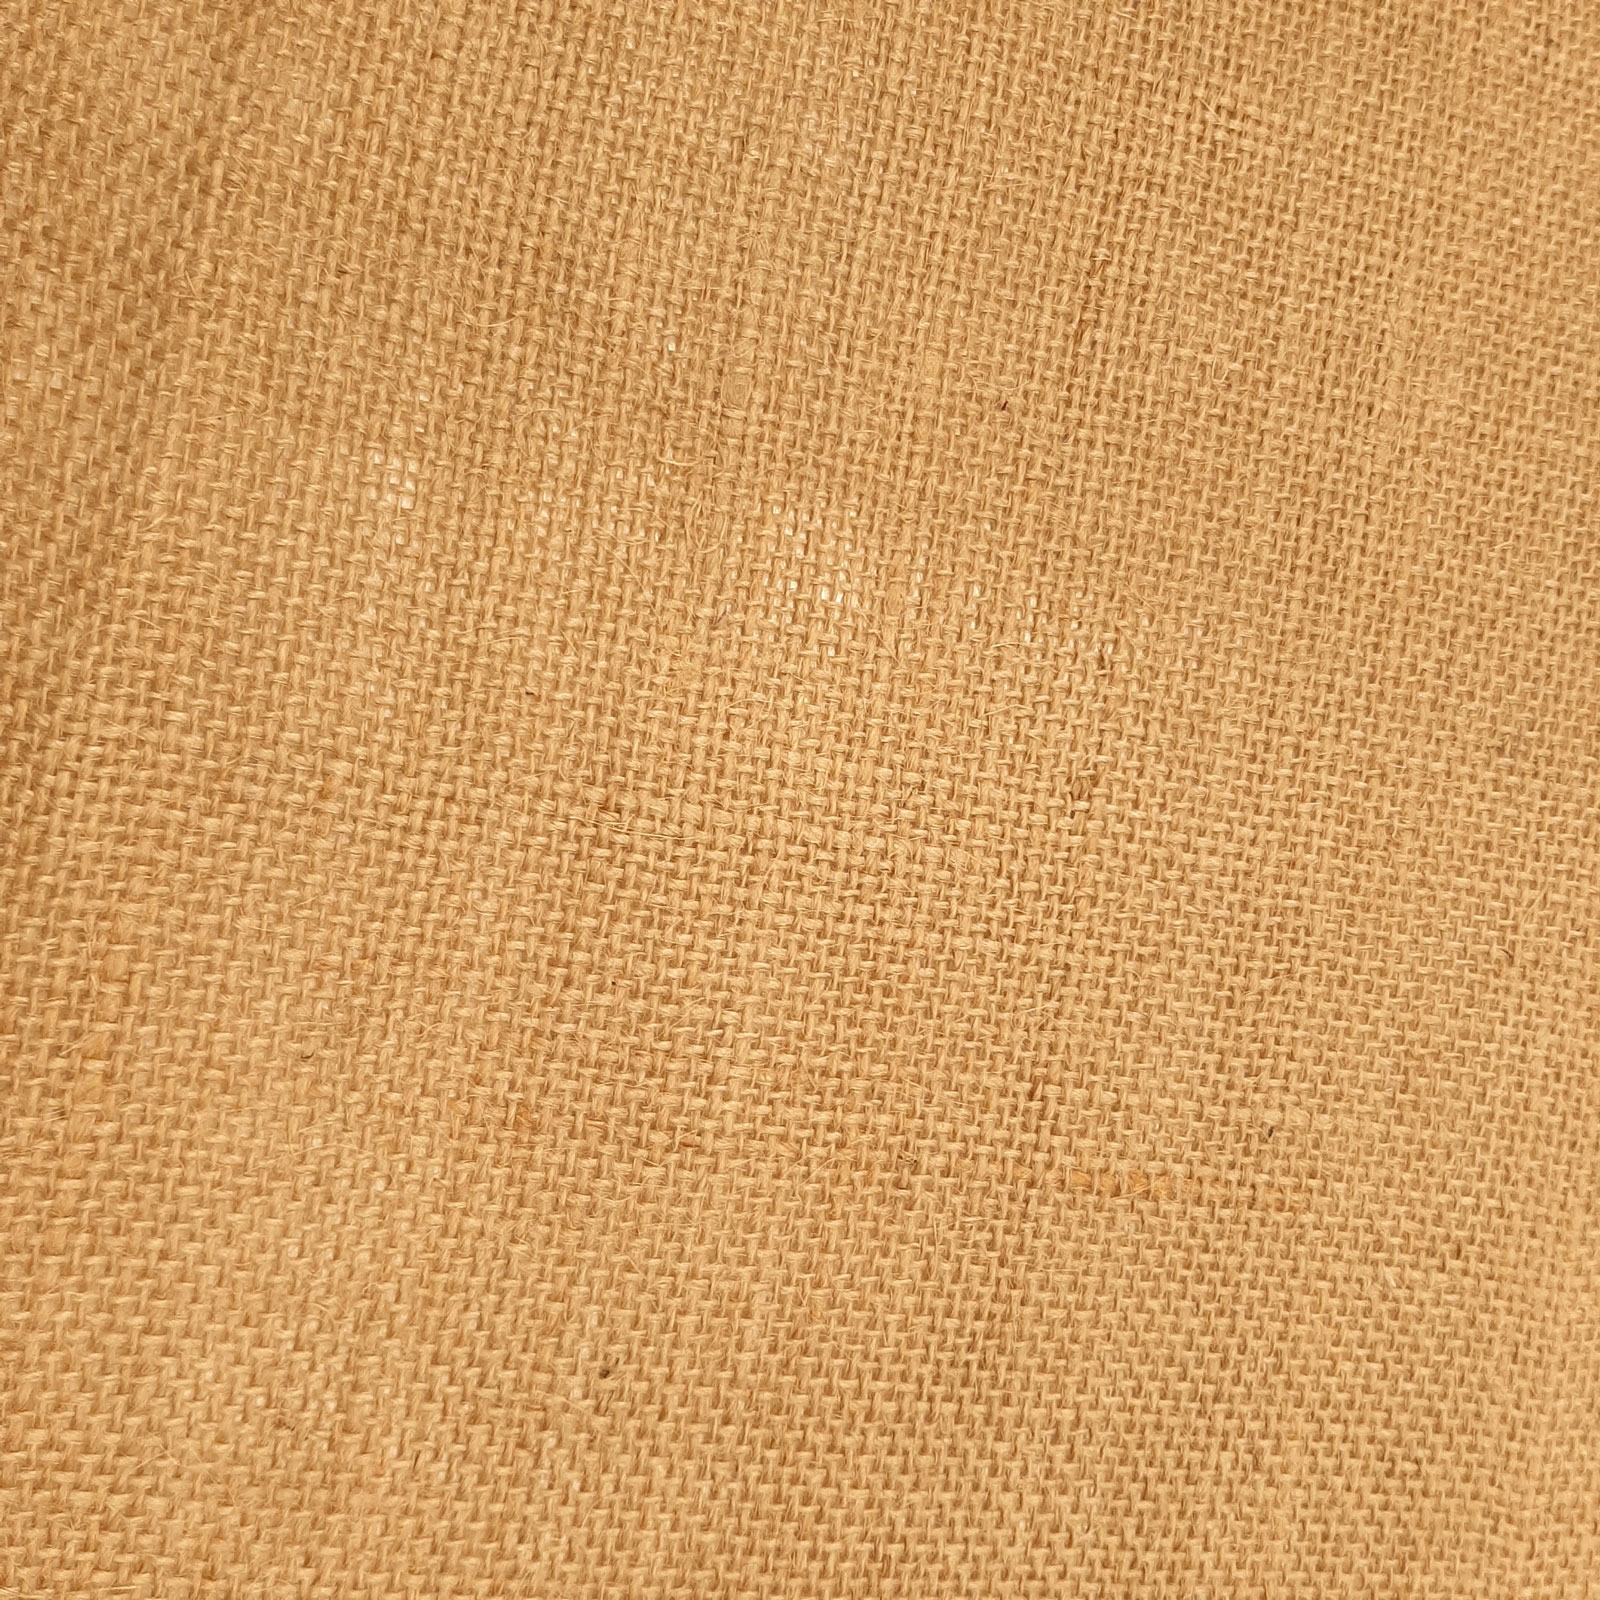 Joris - Tissu décoratif en jute / jute naturel - largeur : 130cm